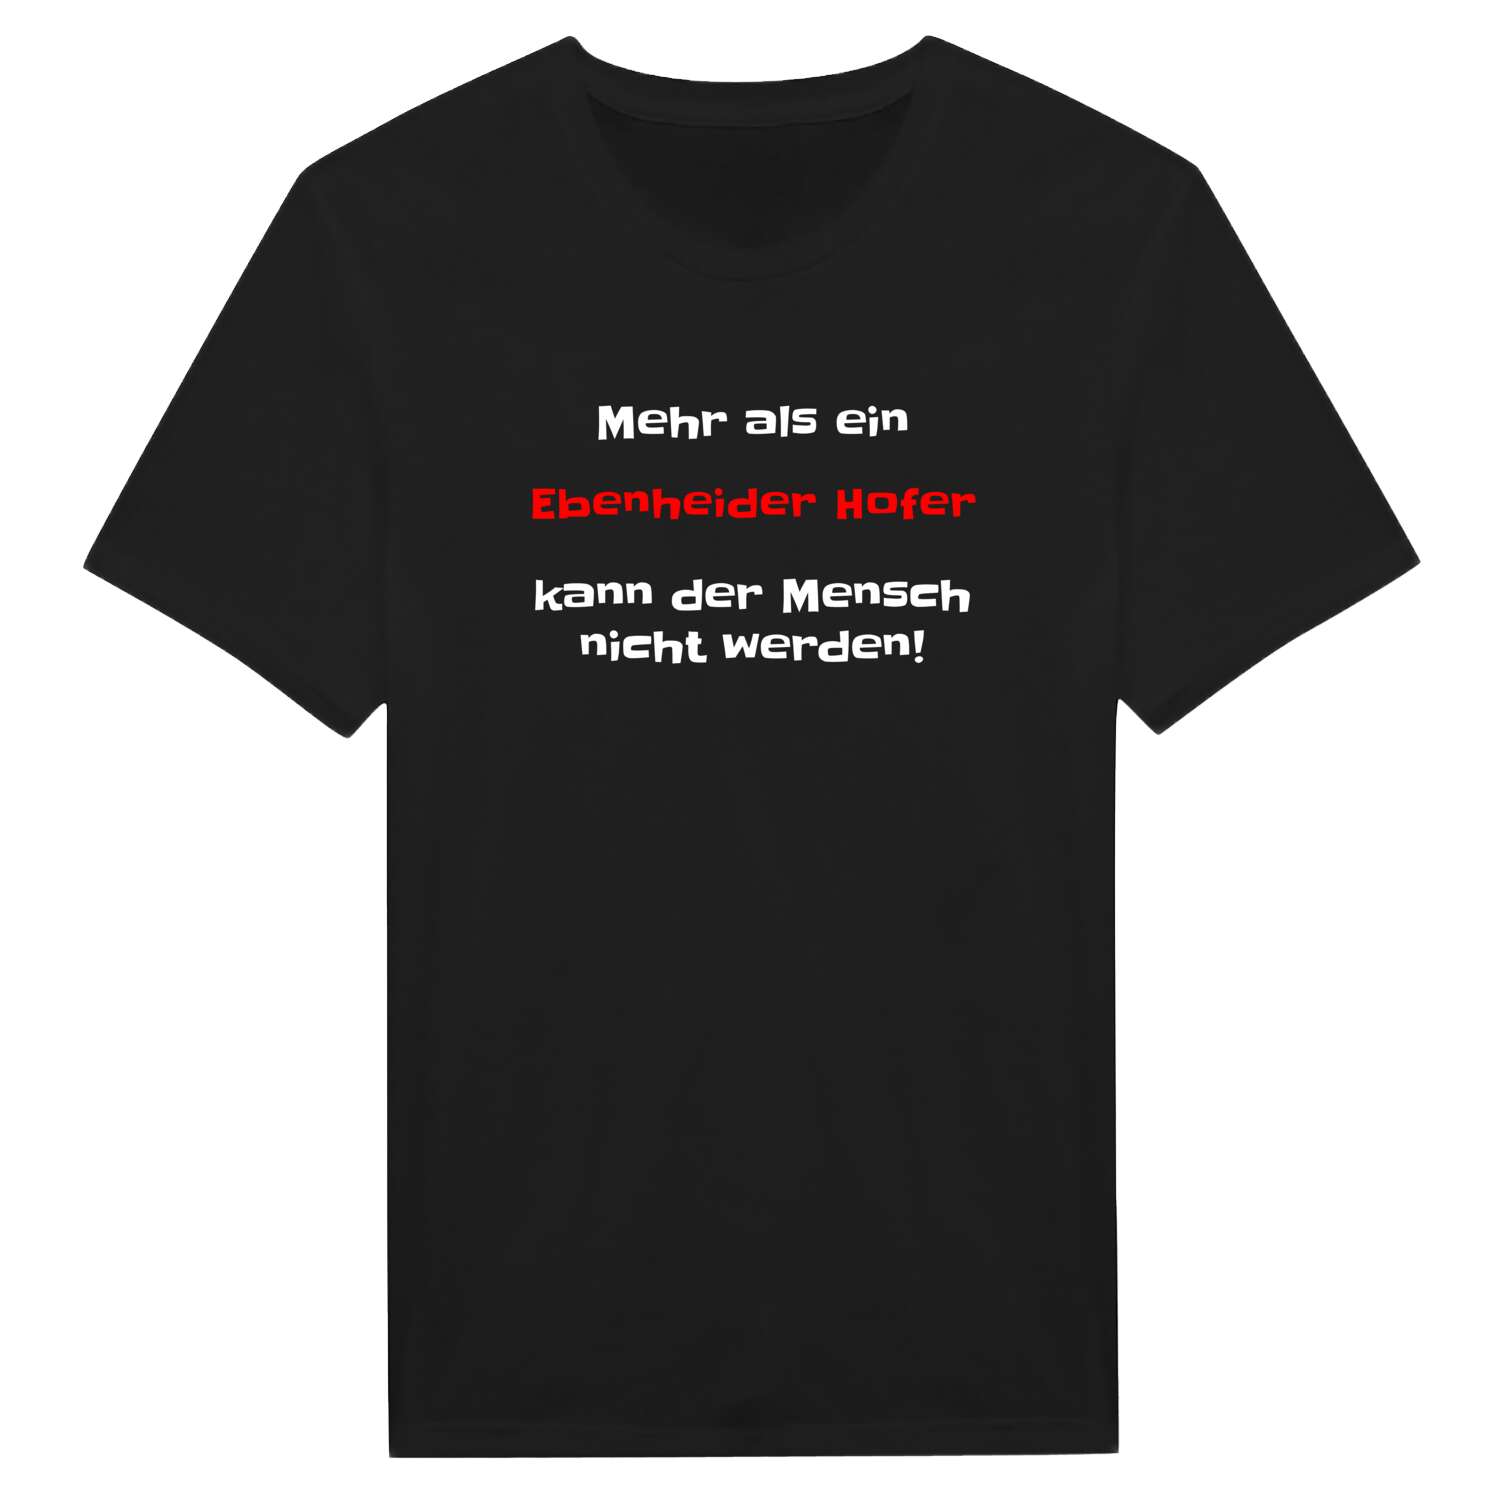 Ebenheider Hof T-Shirt »Mehr als ein«